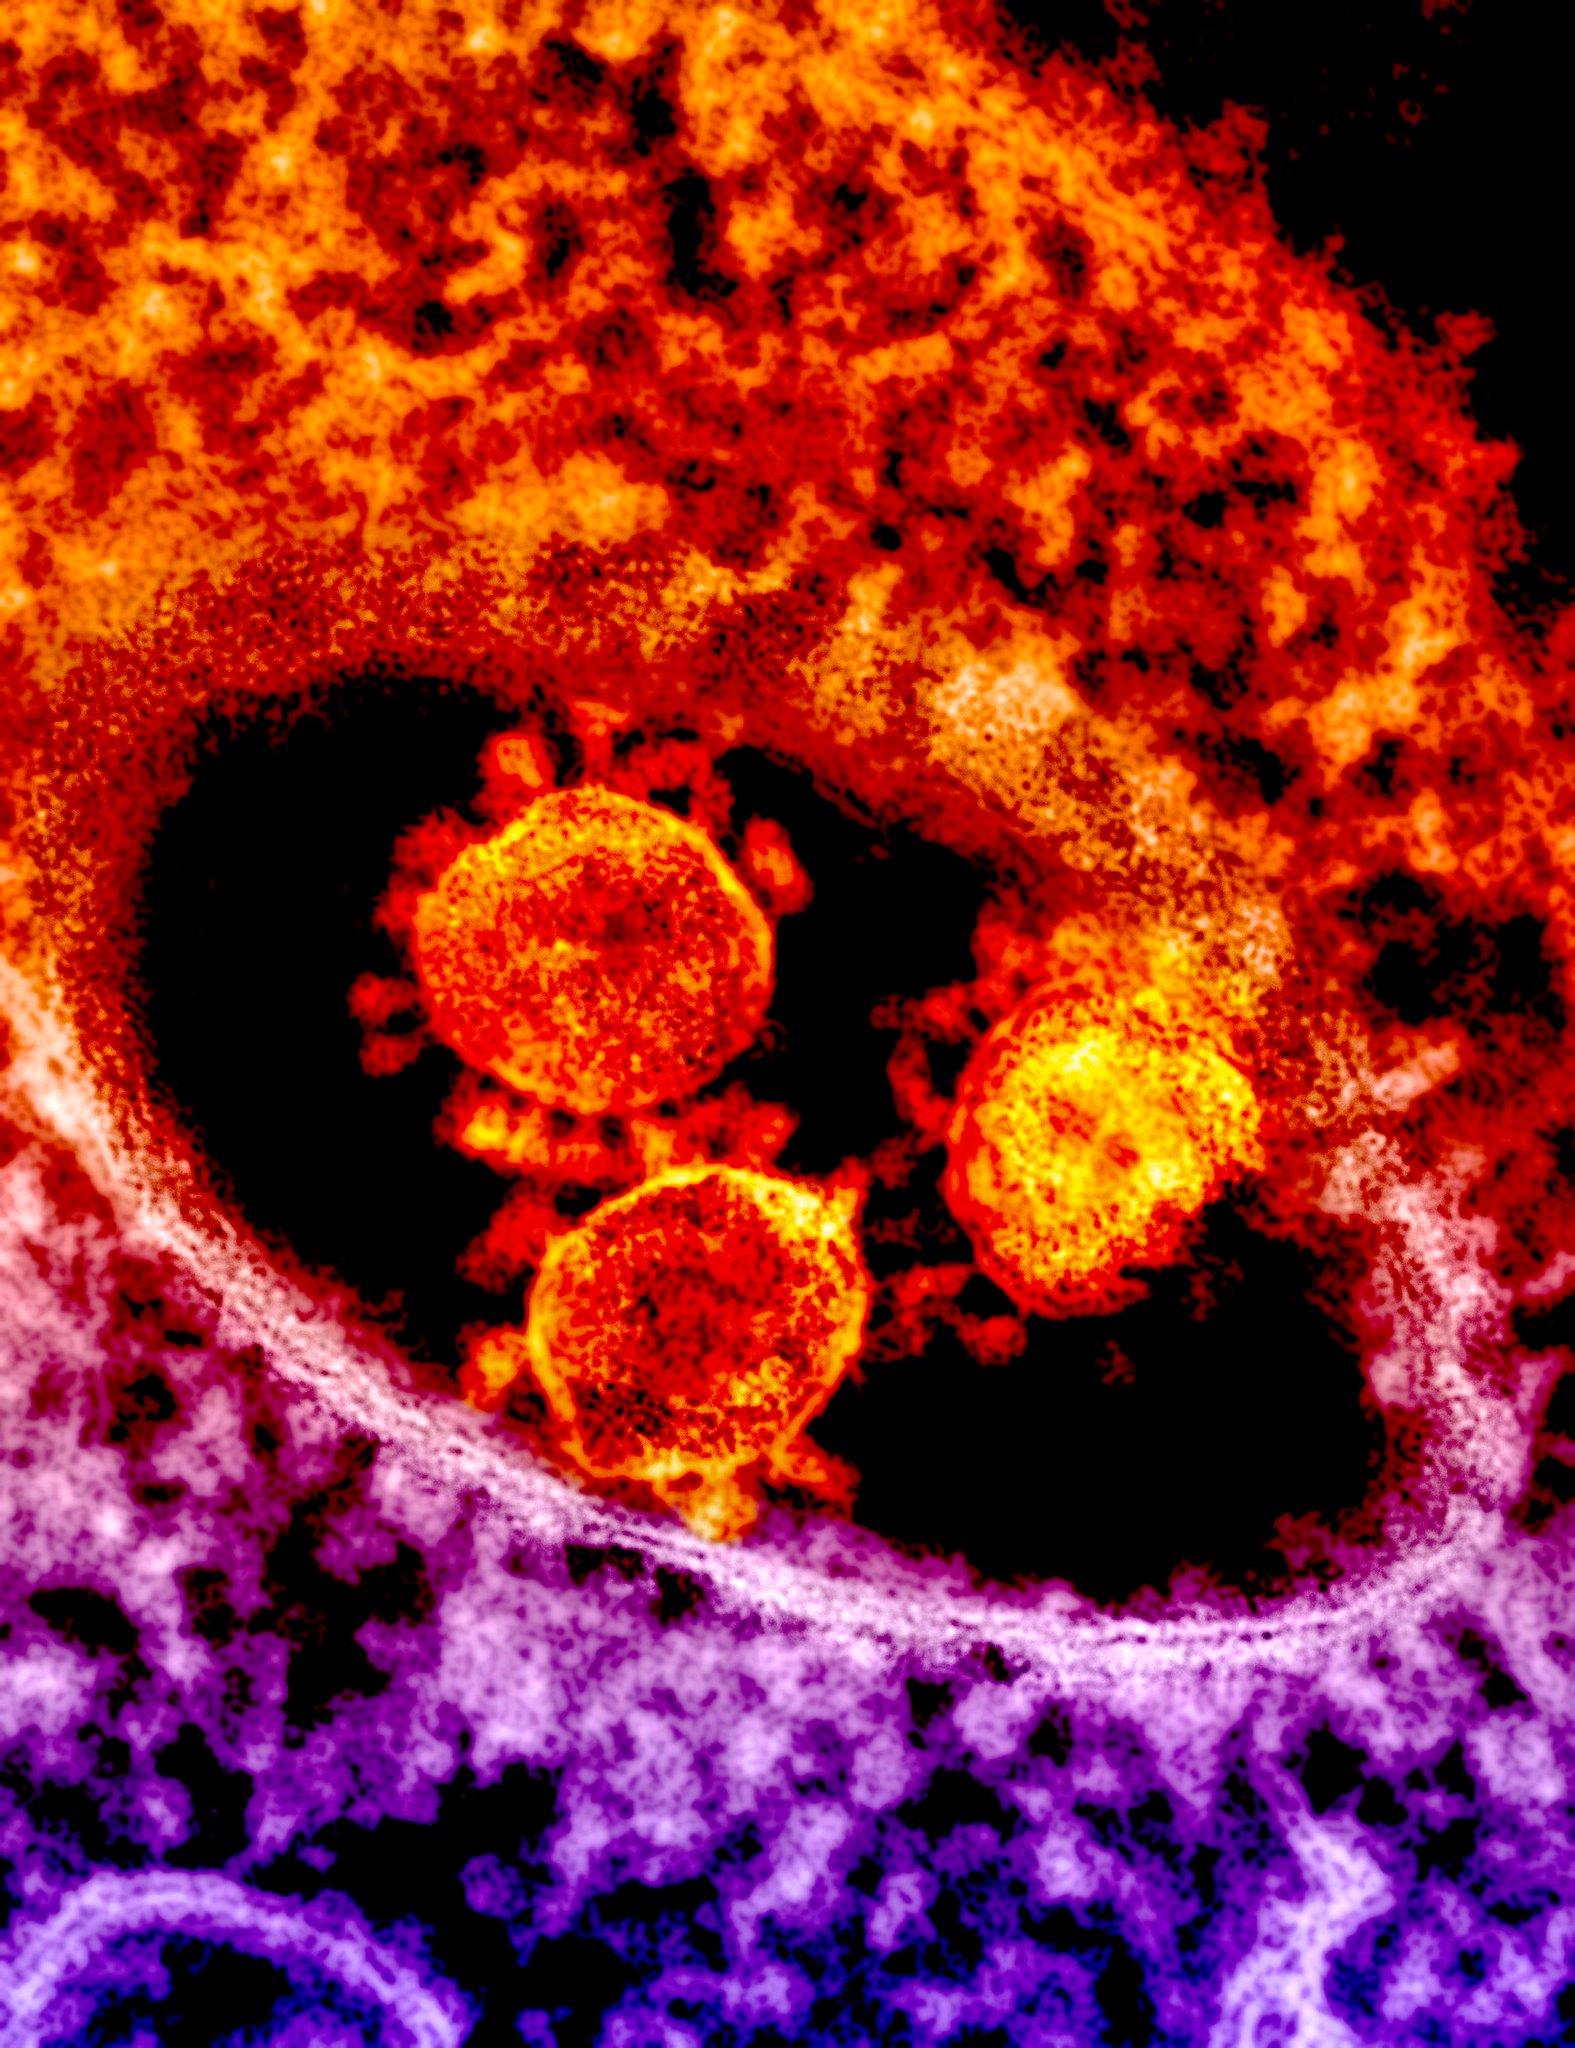 MERS coronavirus particles